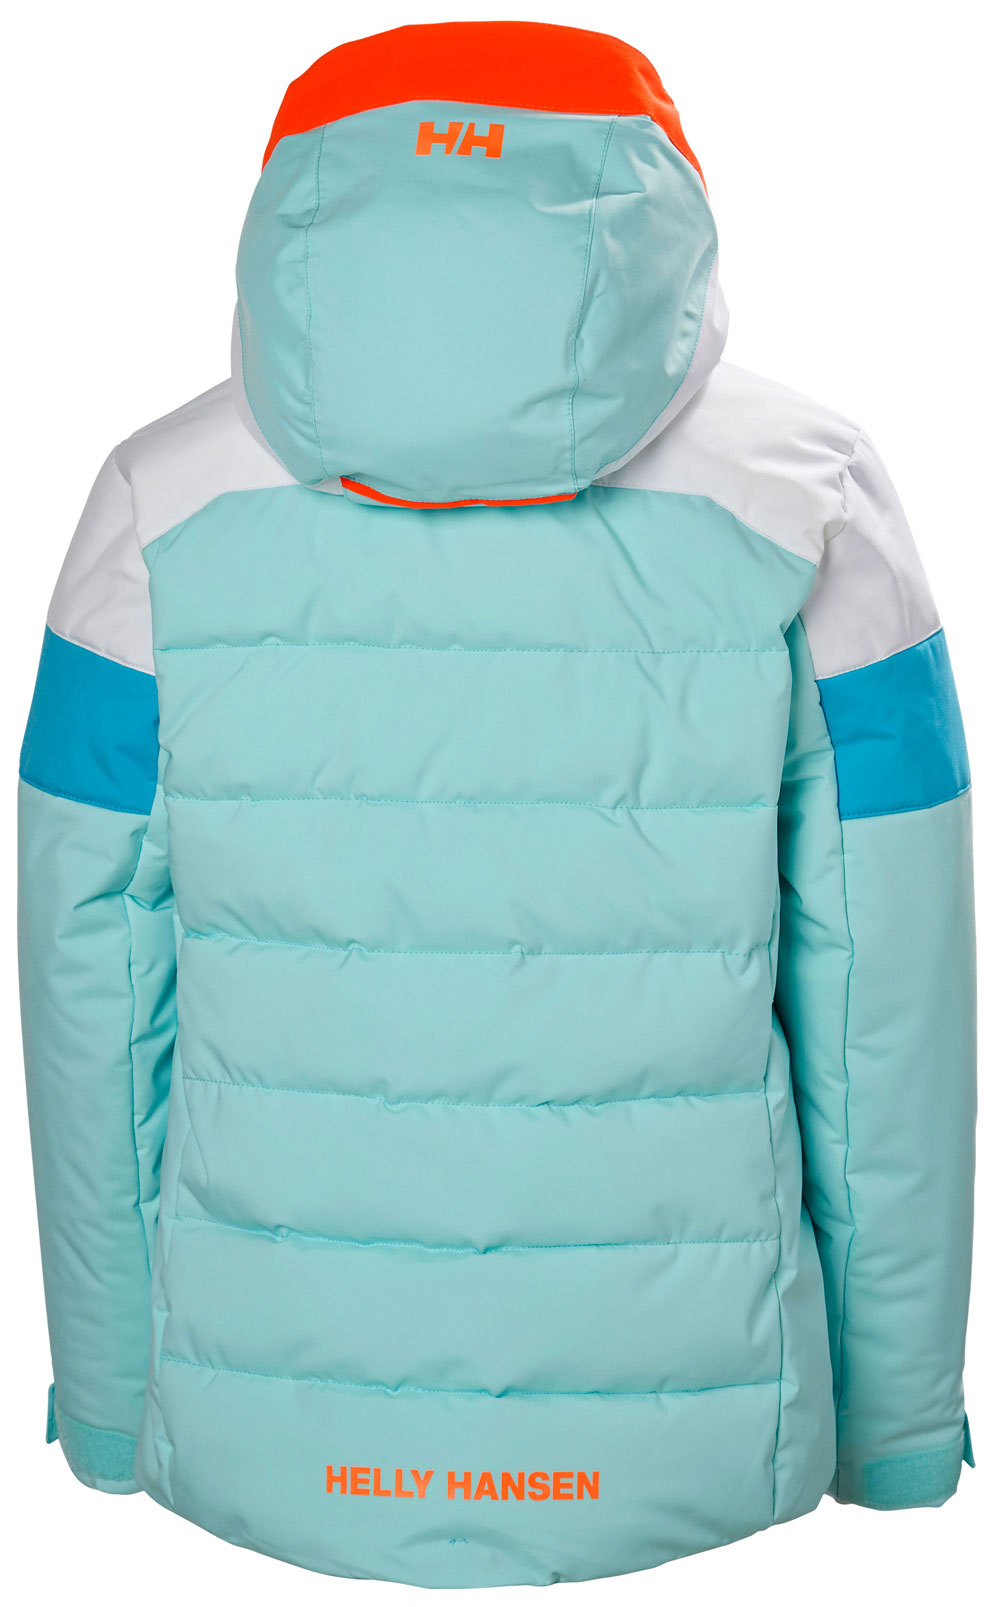 Girls’ skiing jacket